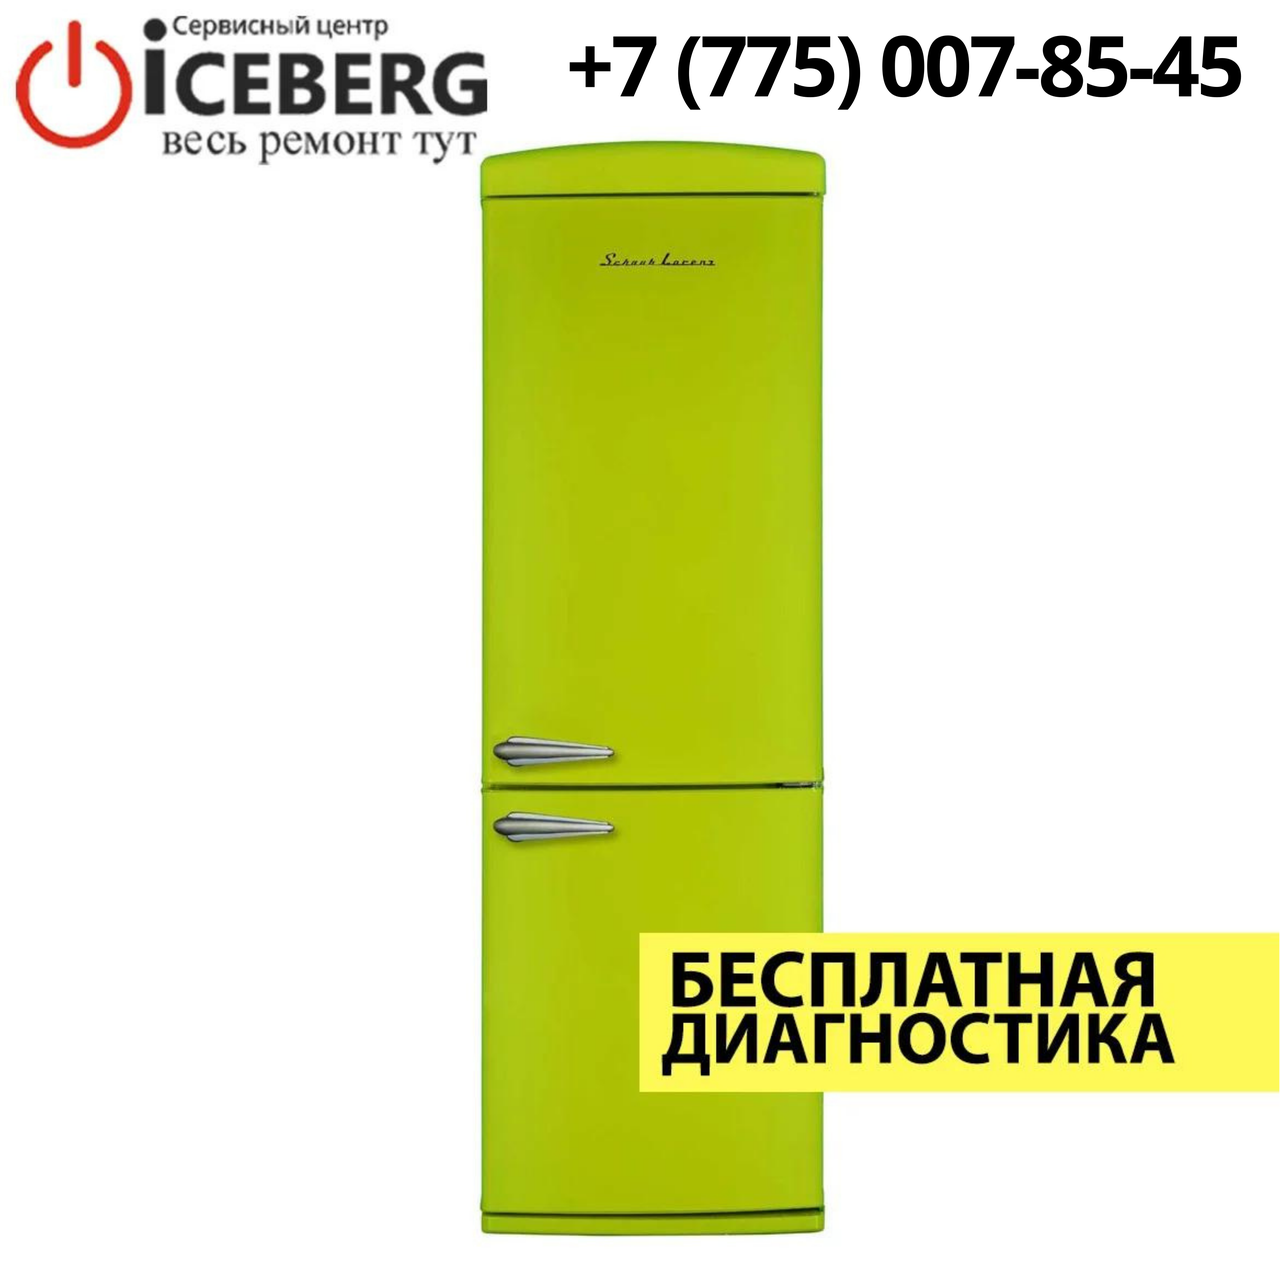 Ремонт холодильников Schaub Lorenz в Алматы